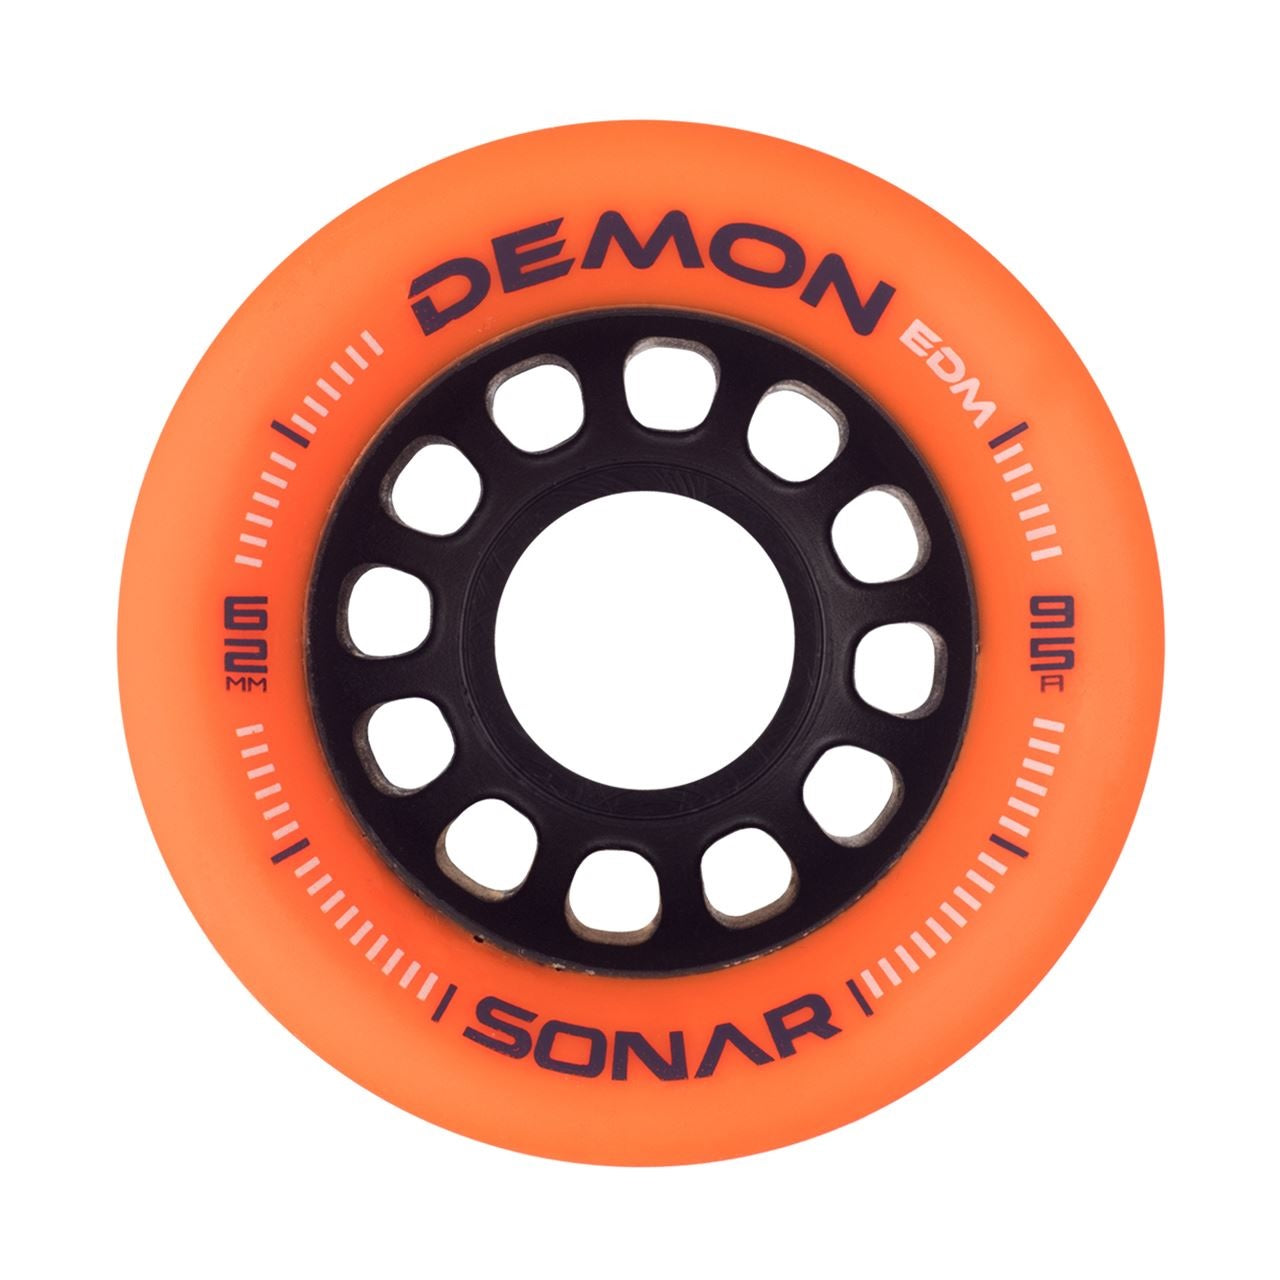 Sonar Demon EDM Roues de patins à roulettes orange 62 mm 95a - Lot de 4